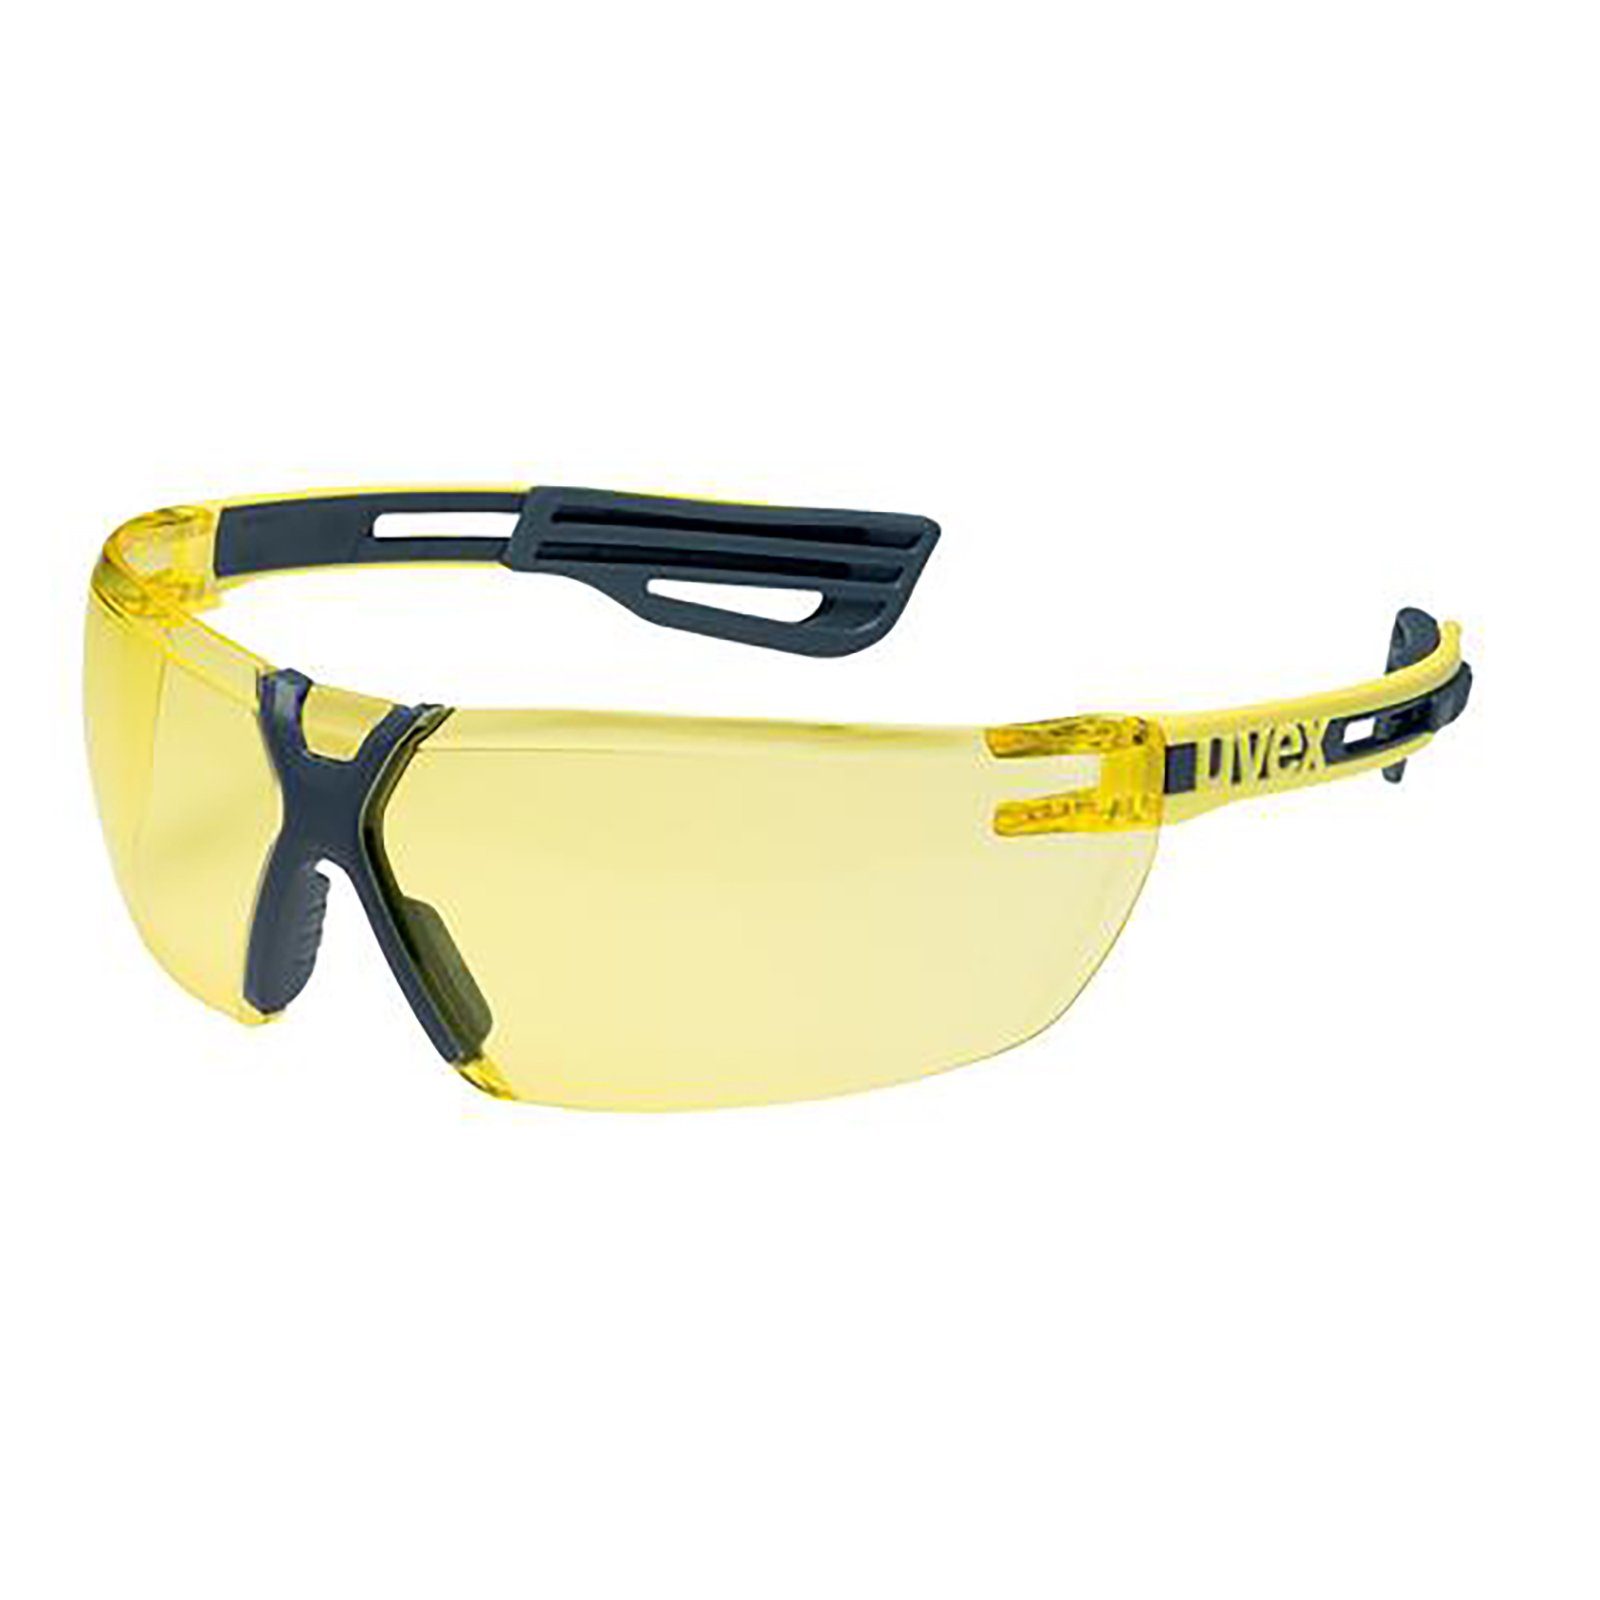 Uvex Arbeitsschutzbrille pro exc. amber Bügelbrille x-fit sv 9199240